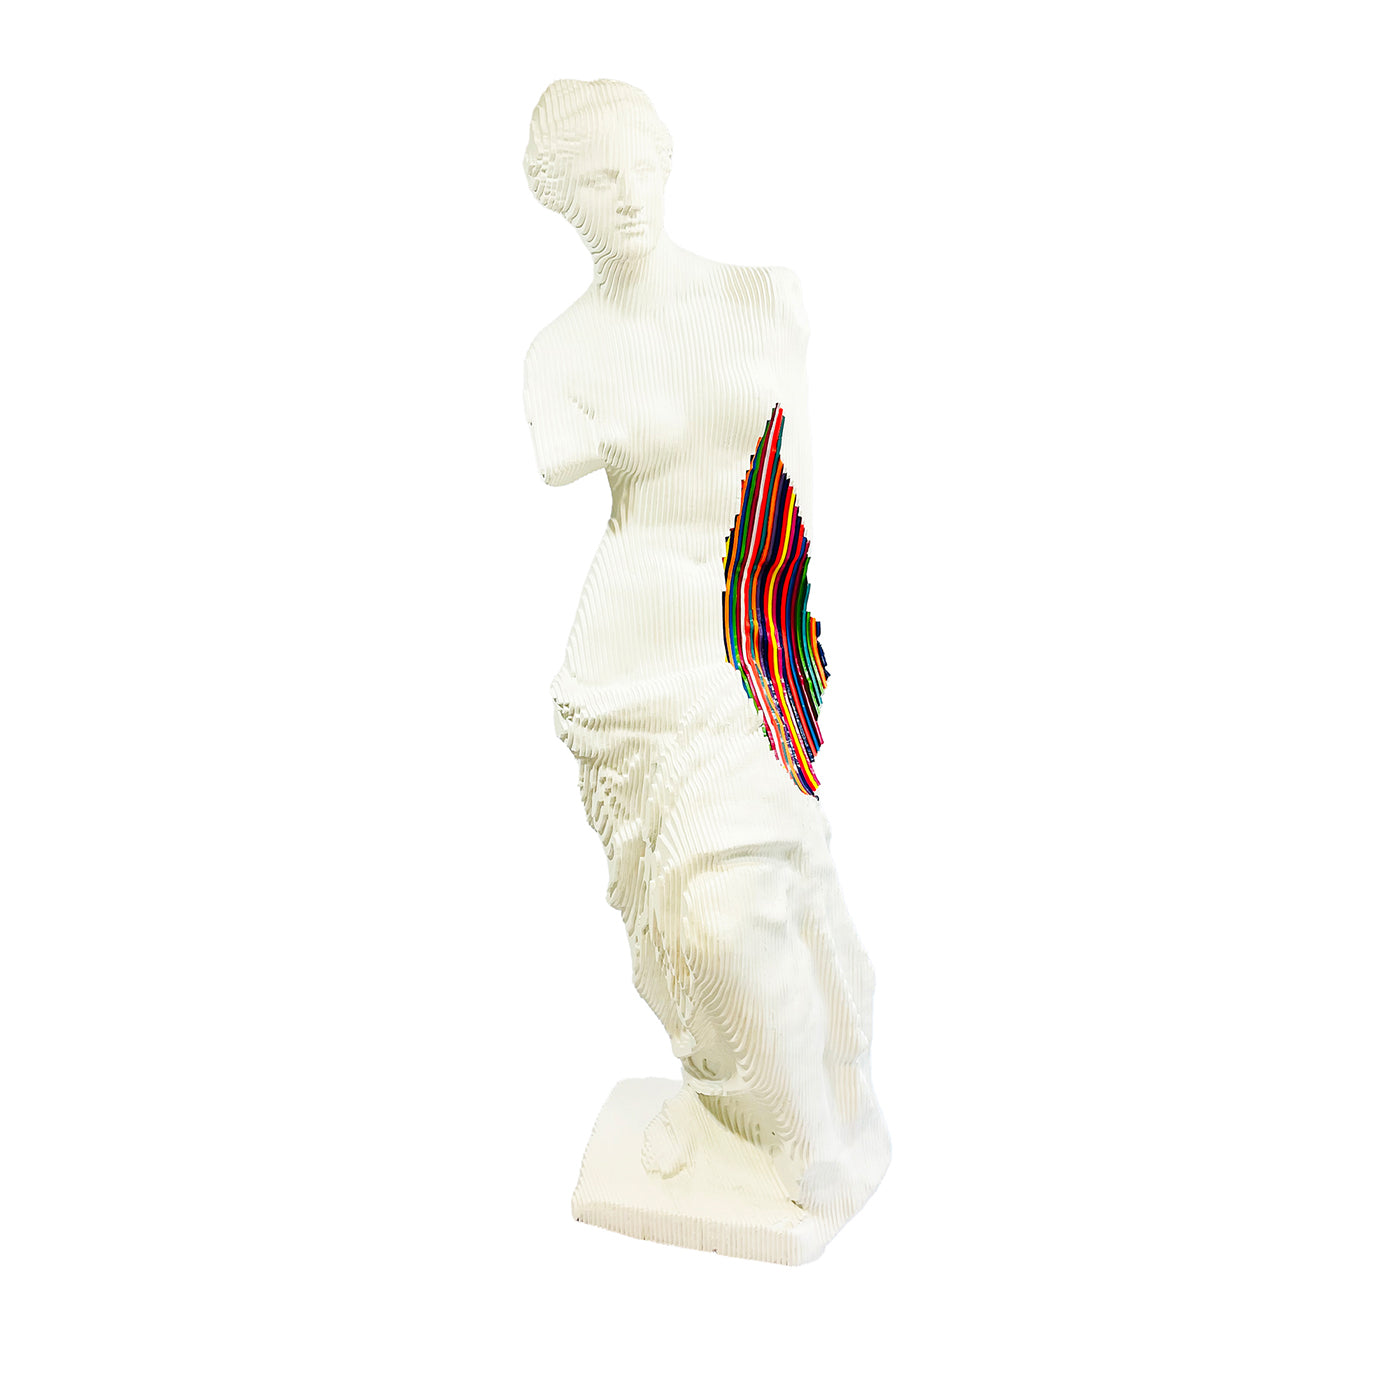 Escultura Venus Milo Colormination - Vista principal